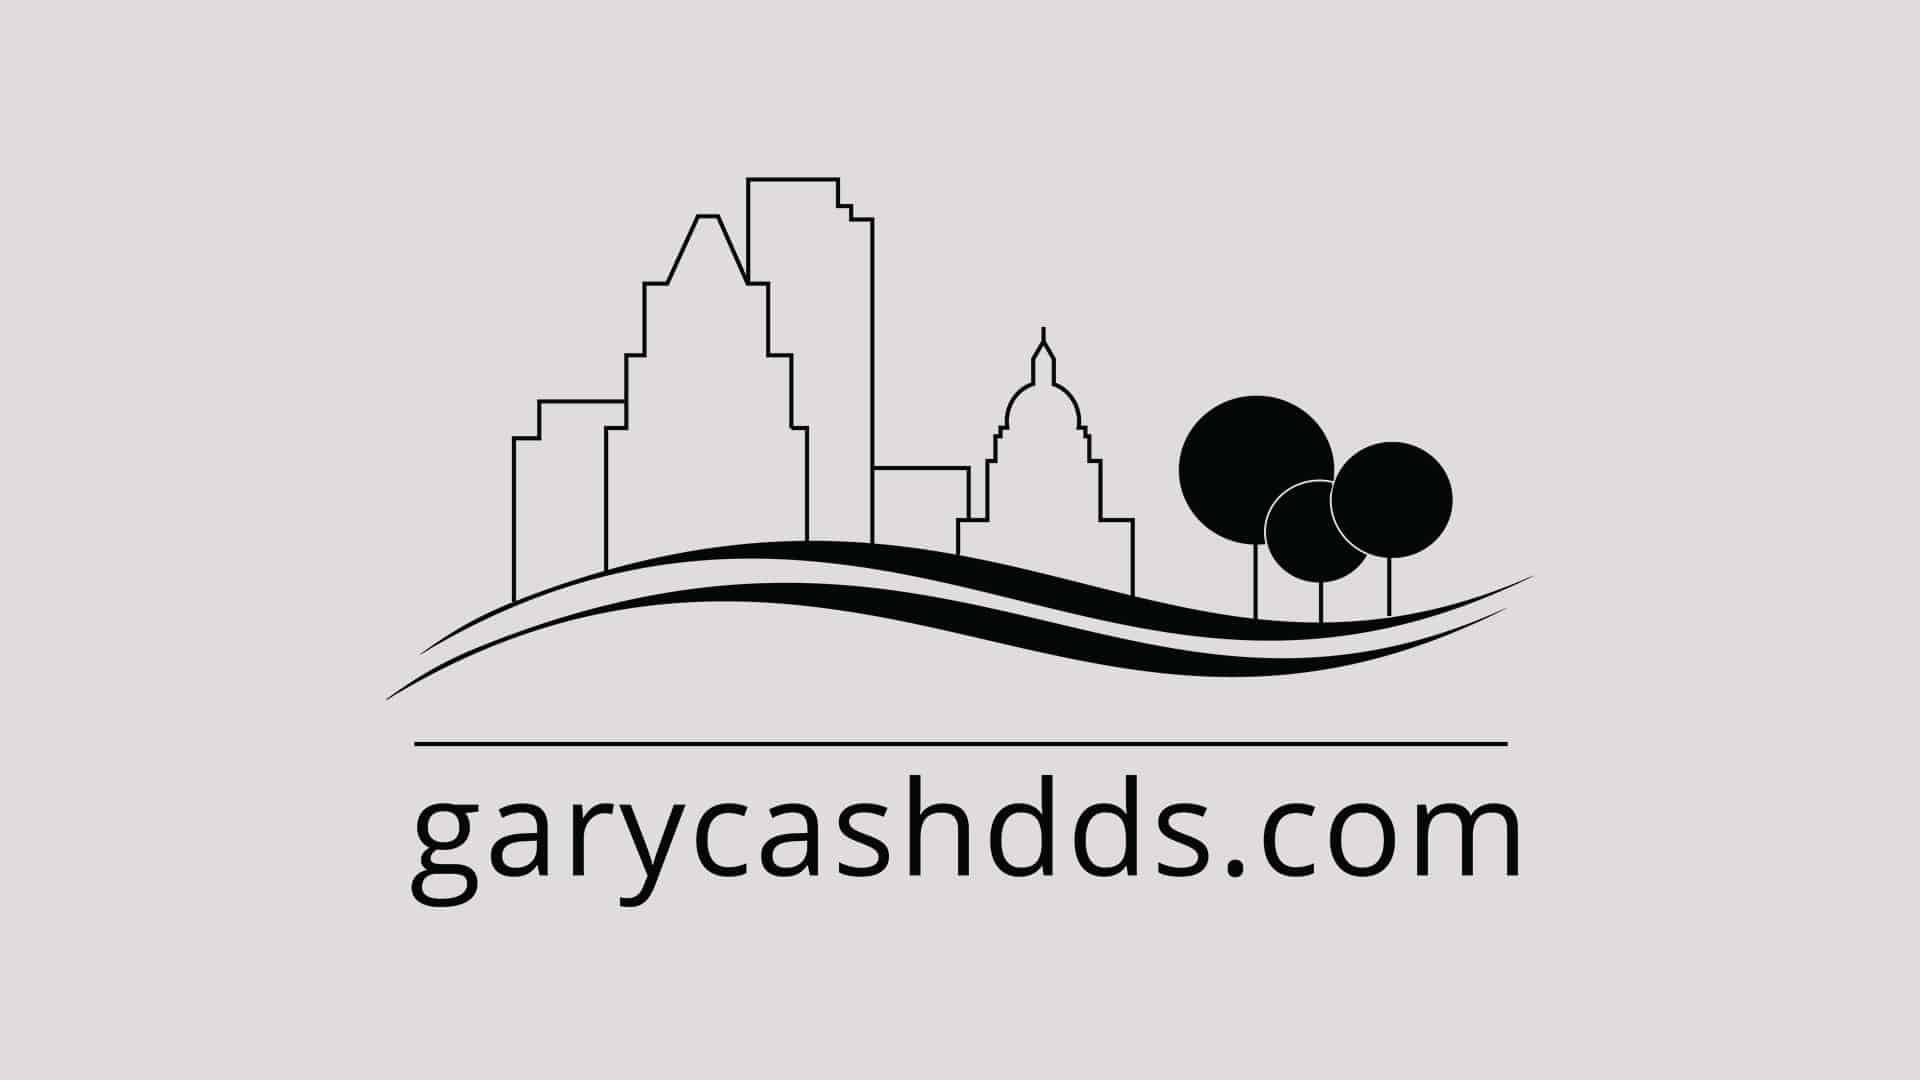 Gary Cash Dds